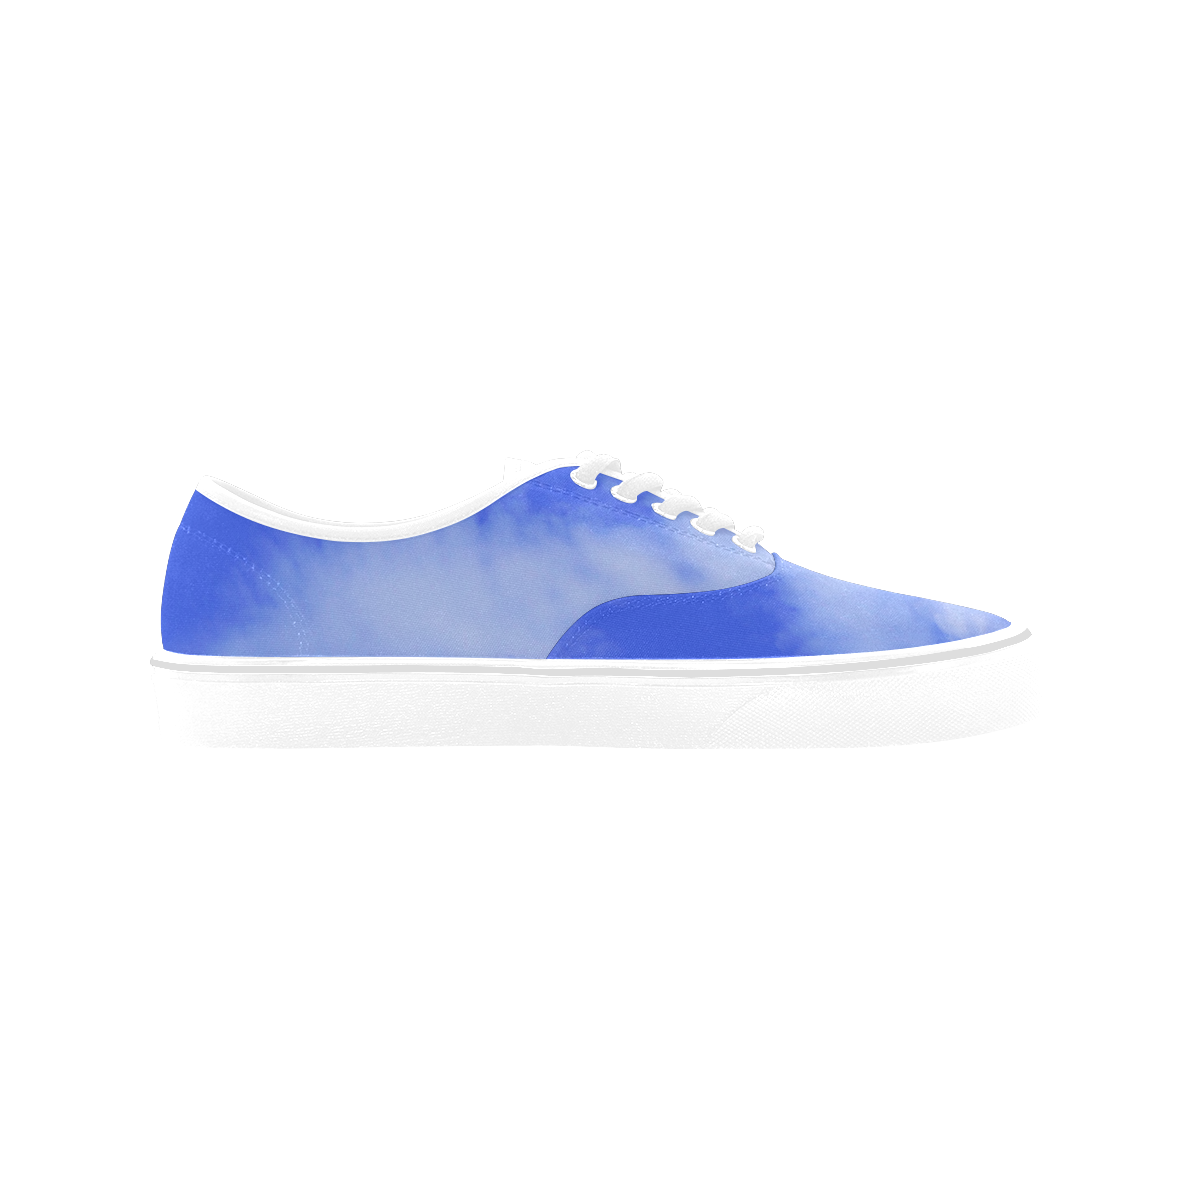 Blue Clouds Arts Classic Women's Canvas Low Top Shoes (Model E001-4)